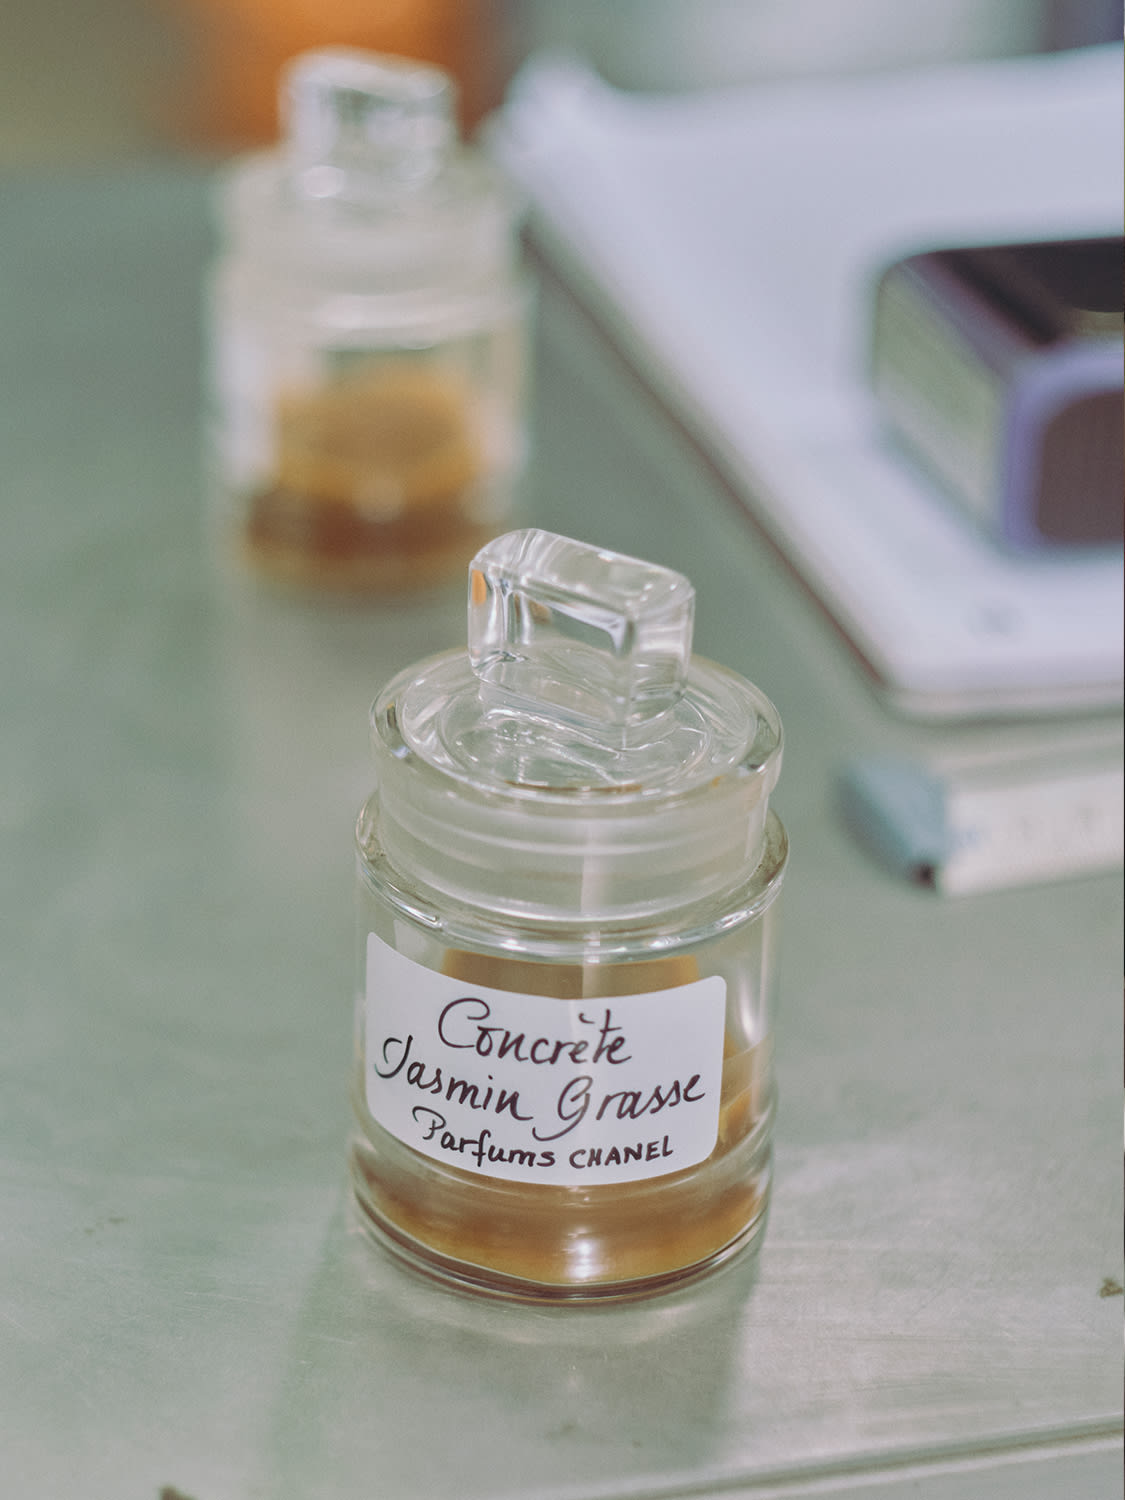 What's Chanel N5 perfume's secret ingredient? Lots of jasmine